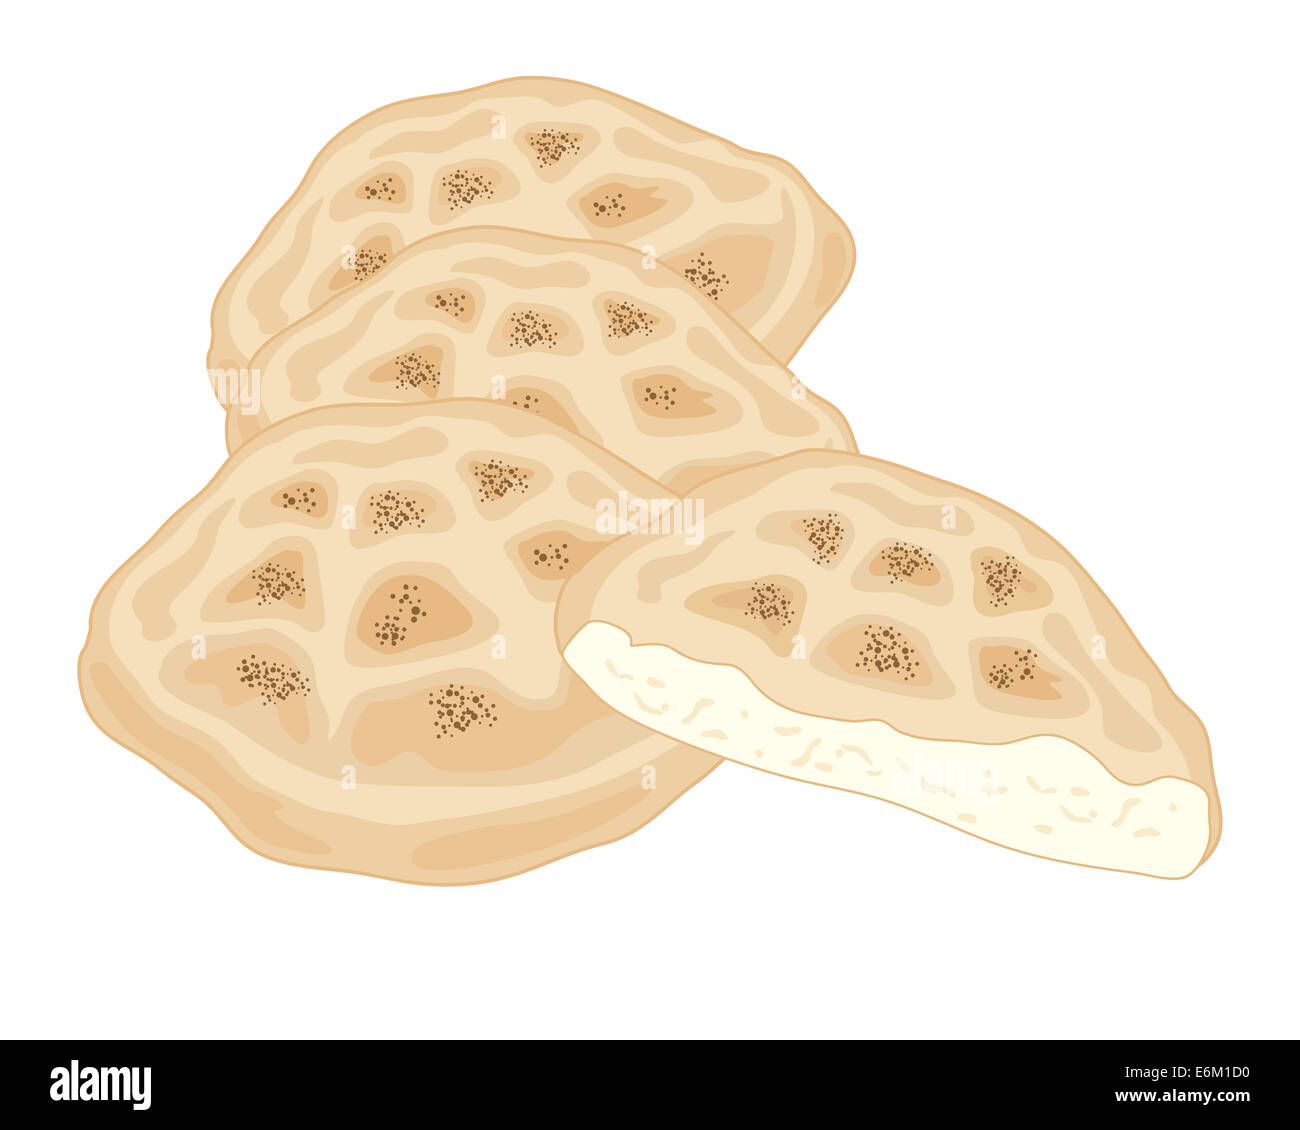 Une illustration d'une pile de délicieux pain plat turc sur un fond blanc Banque D'Images